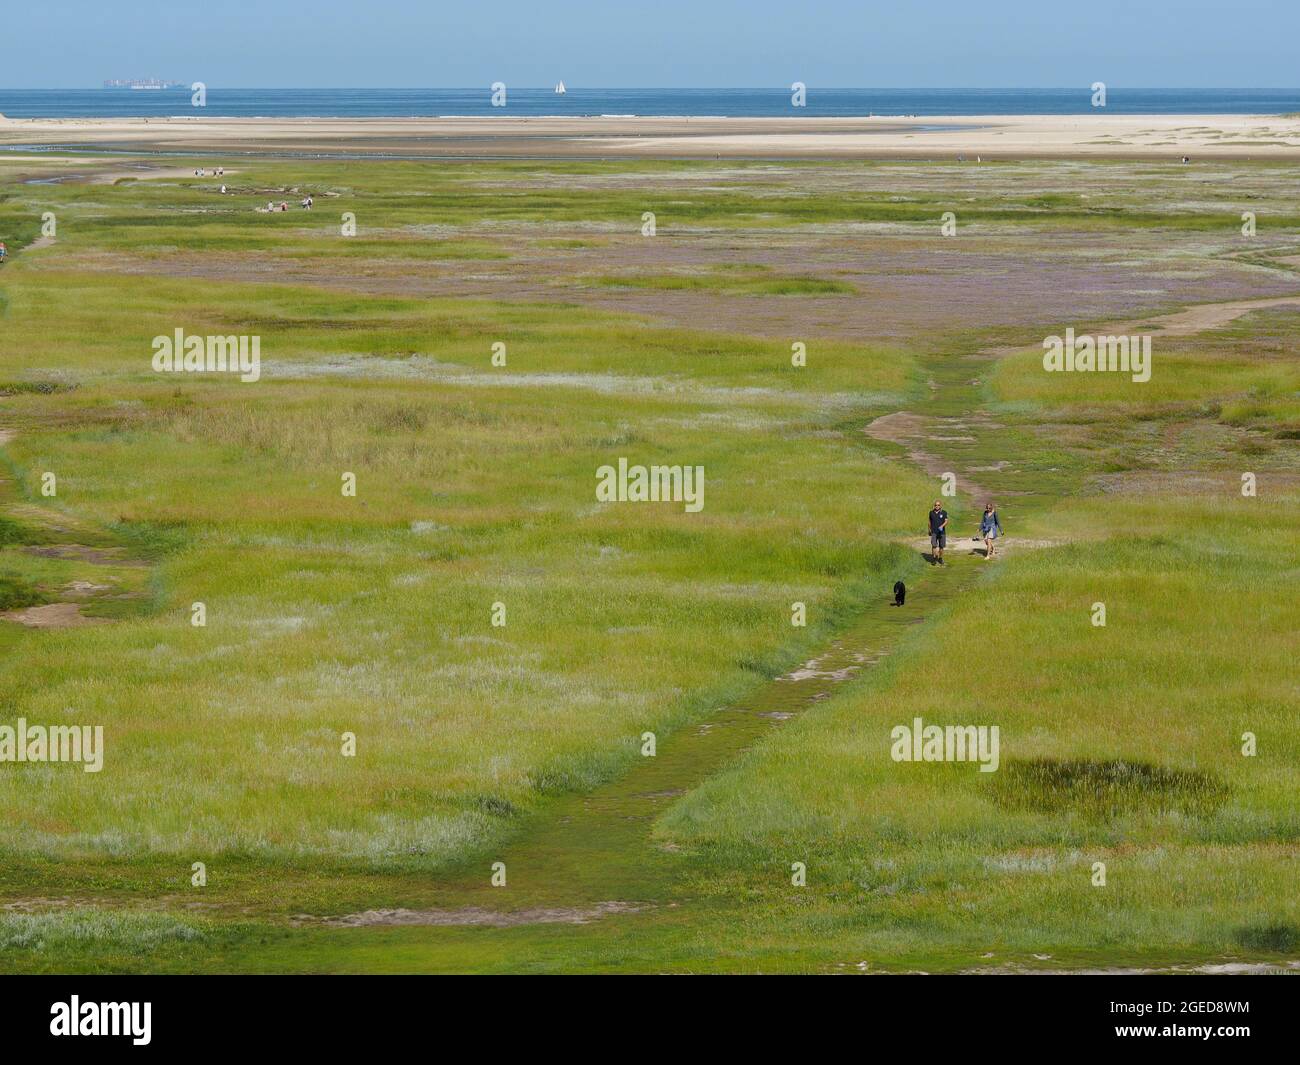 Le parc naturel de Slufter sur l'île Texel est un environnement très spécial, en raison de l'écart dans les dunes l'eau salée déborde régulièrement la terre. Texel, Banque D'Images